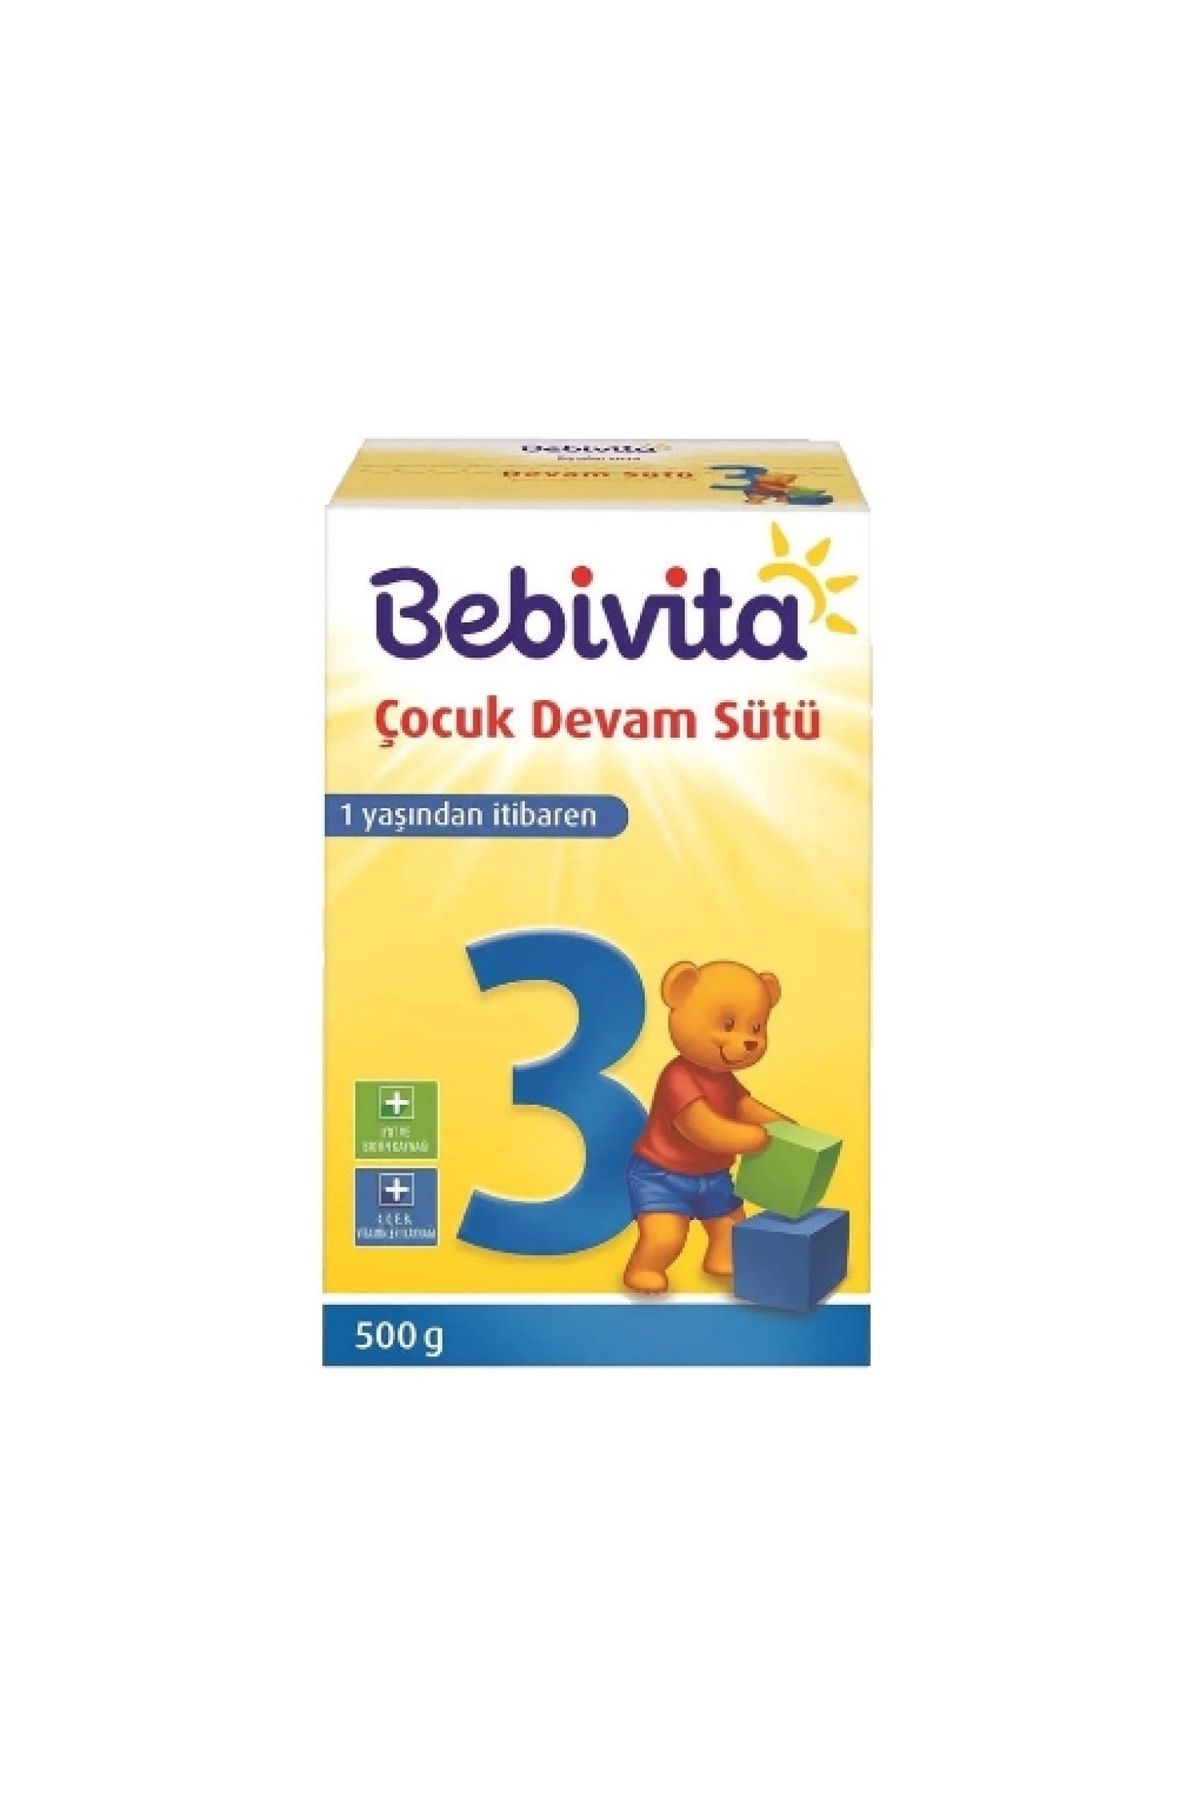 Bebivita Devam Sütü 3 500 Gr. (4'LÜ)